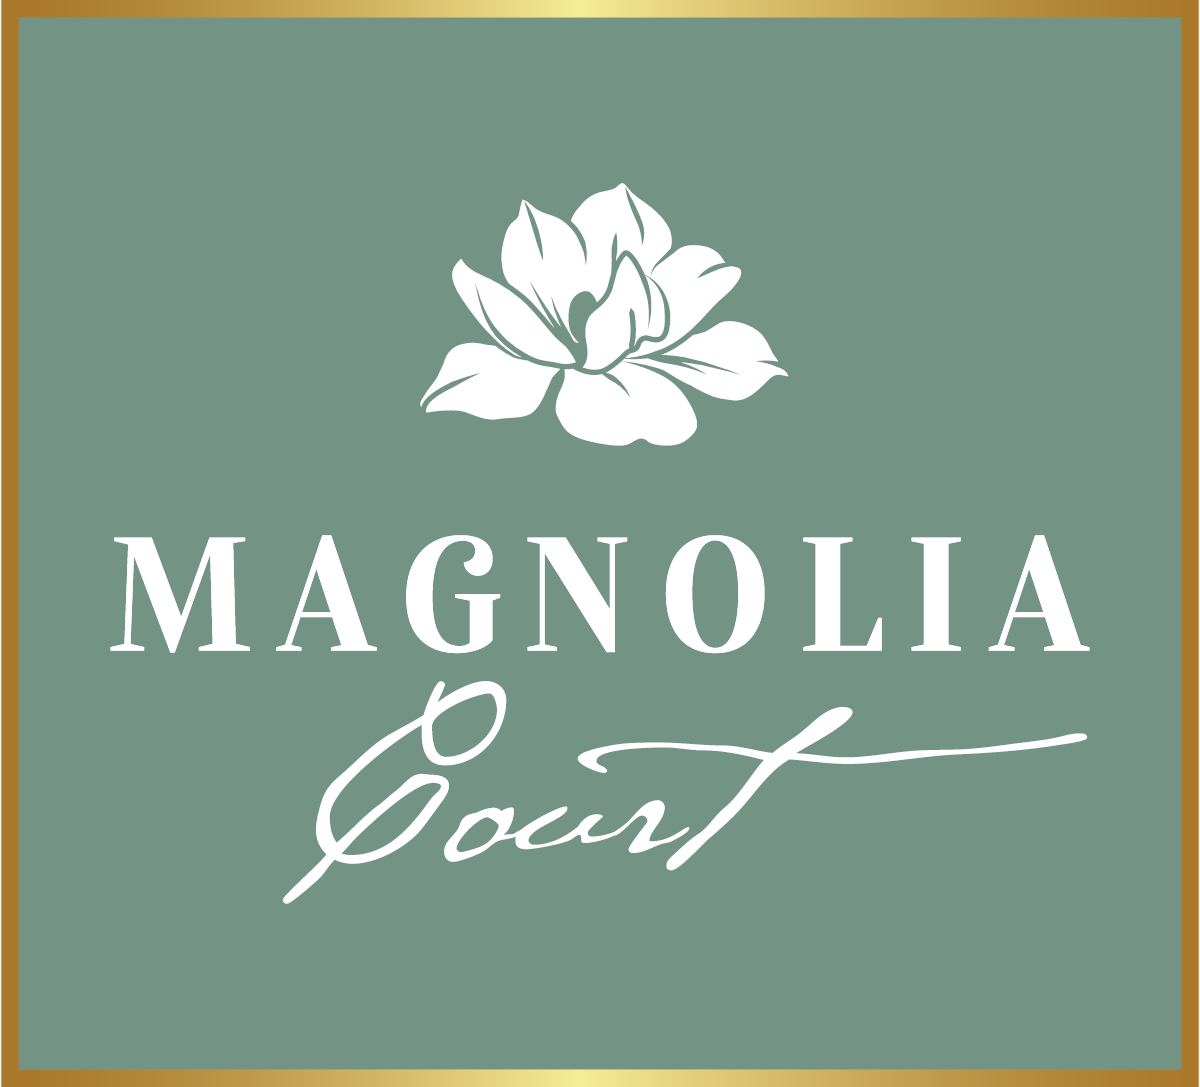 Magnolia Court Homes, Oxnard CA